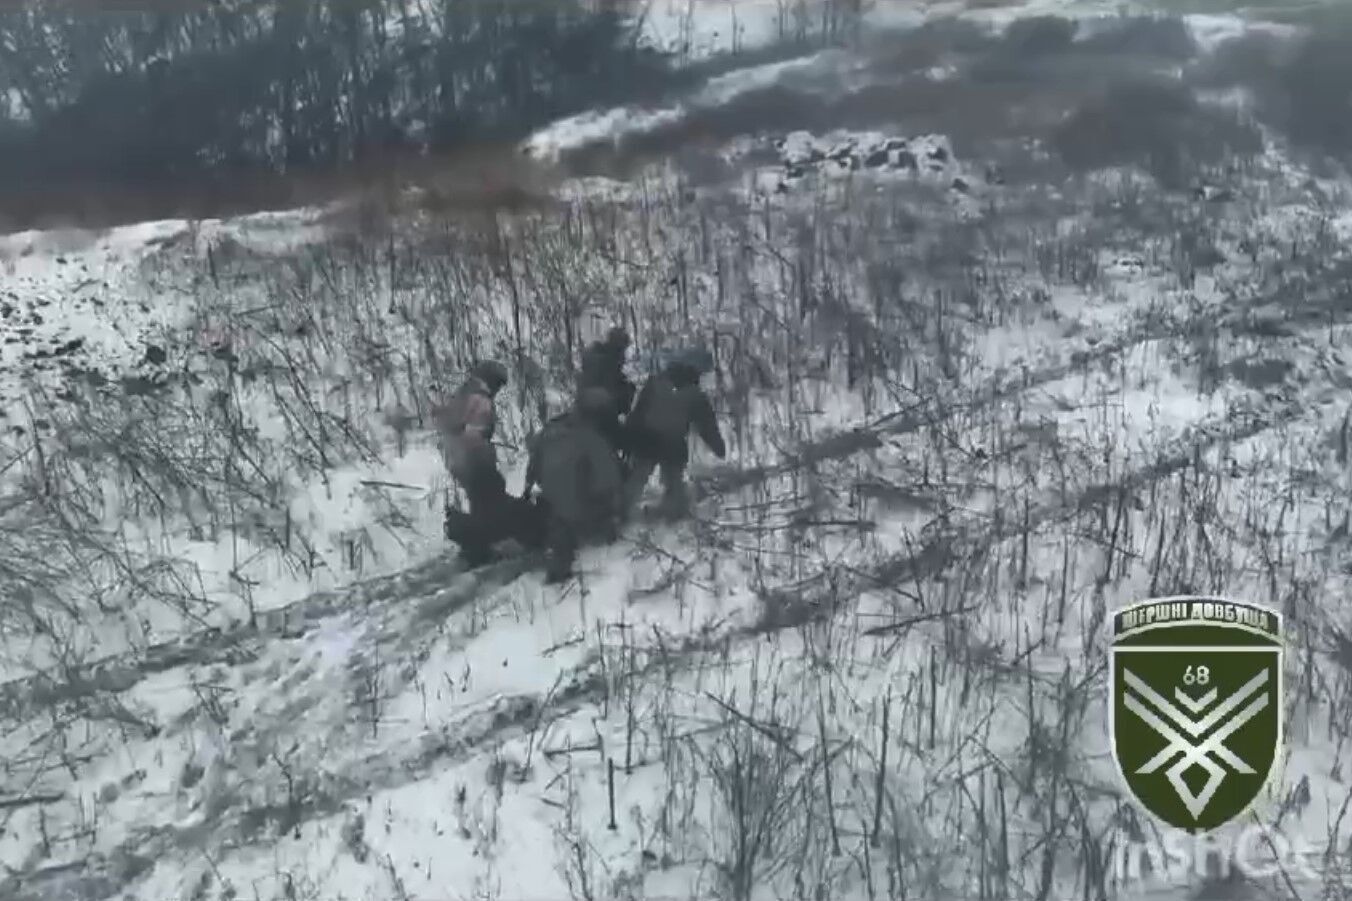 "Друг, пей и ползи за дроном!" Сеть тронули кадры спасения украинского защитника. Видео